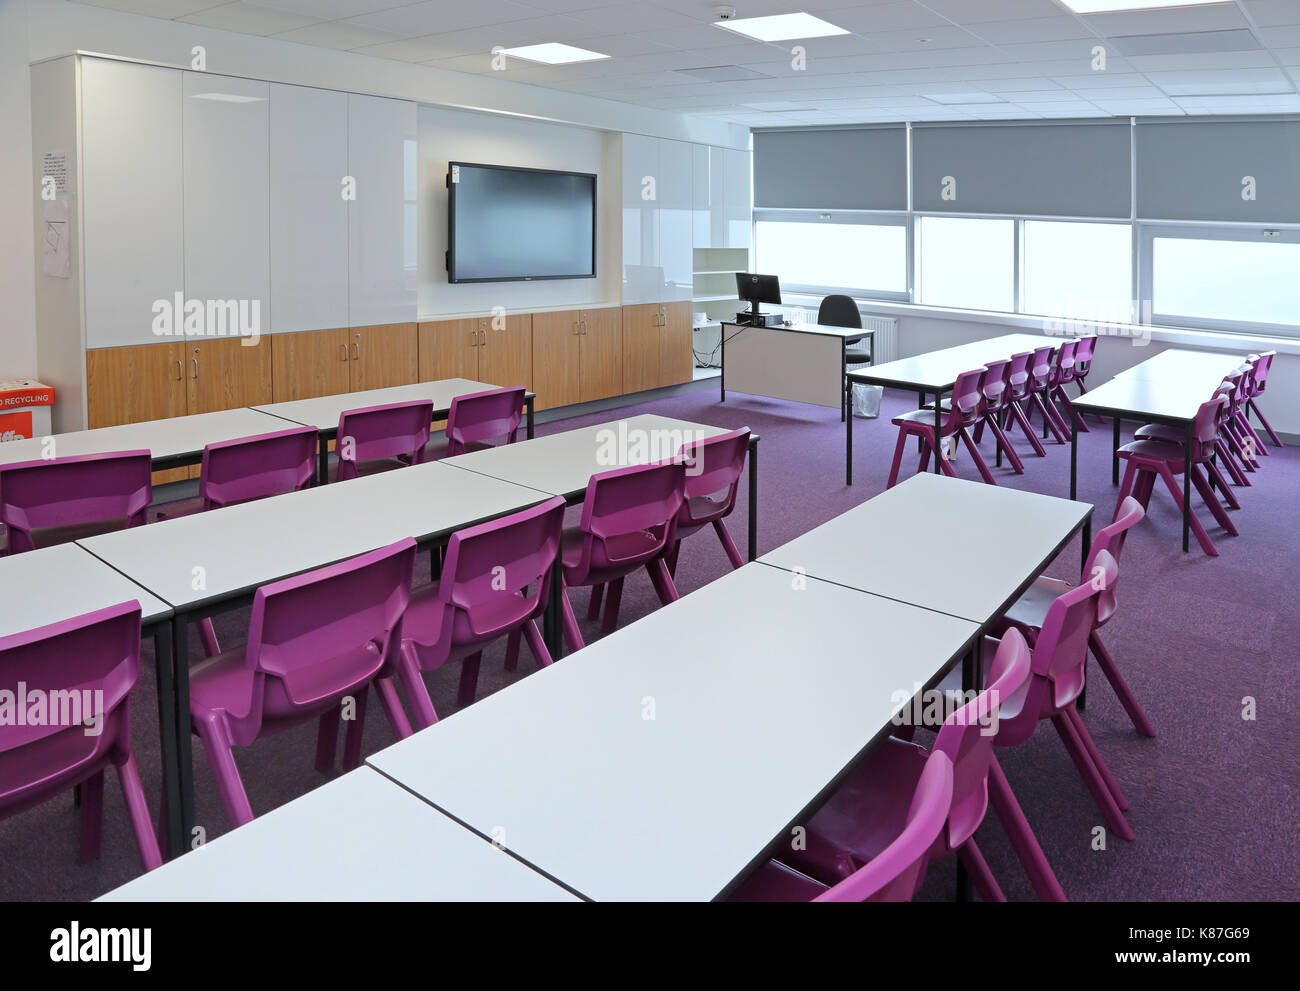 Ein modernes Klassenzimmer in einer neuen Londoner Sekundarschule. Zeigt traditionelle Anordnung mit Schreibtischen gegenüber einem großen Computermonitor.leer, keine Schüler. Stockfoto